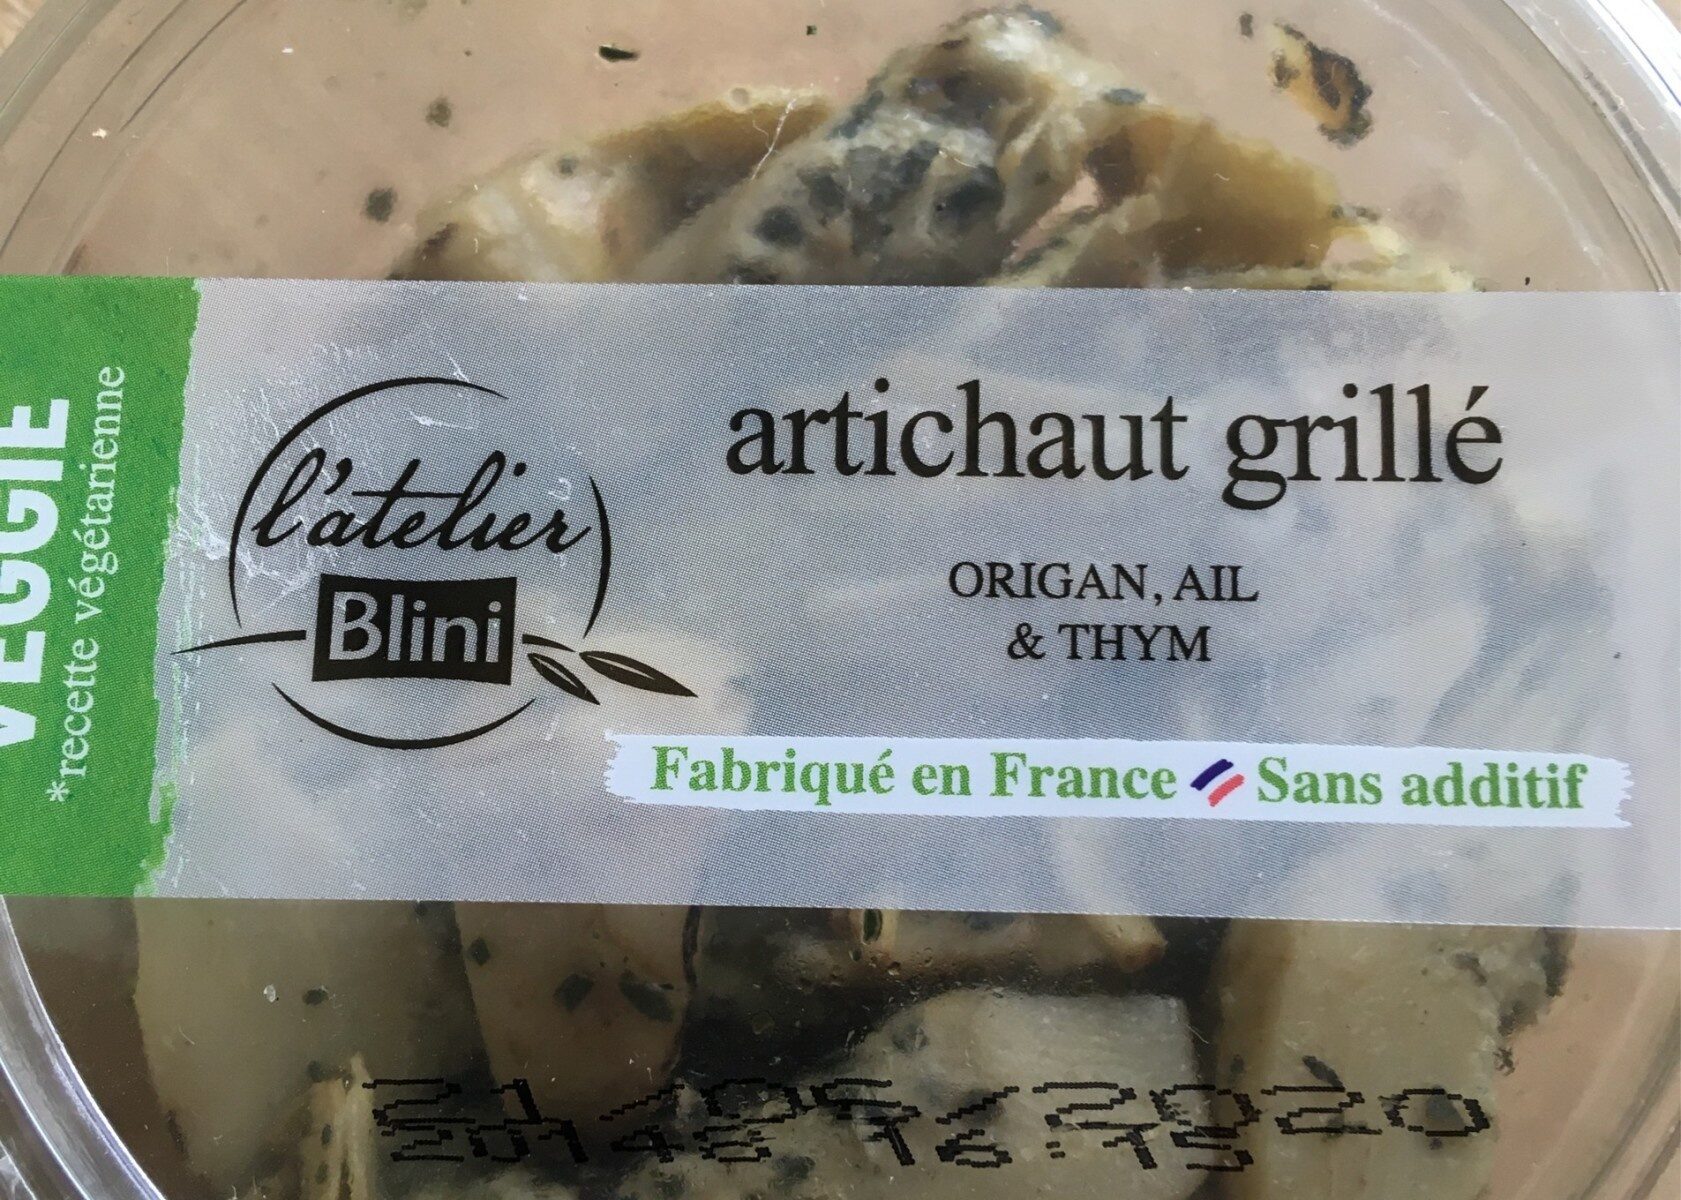 Artichaut grillé - Product - fr